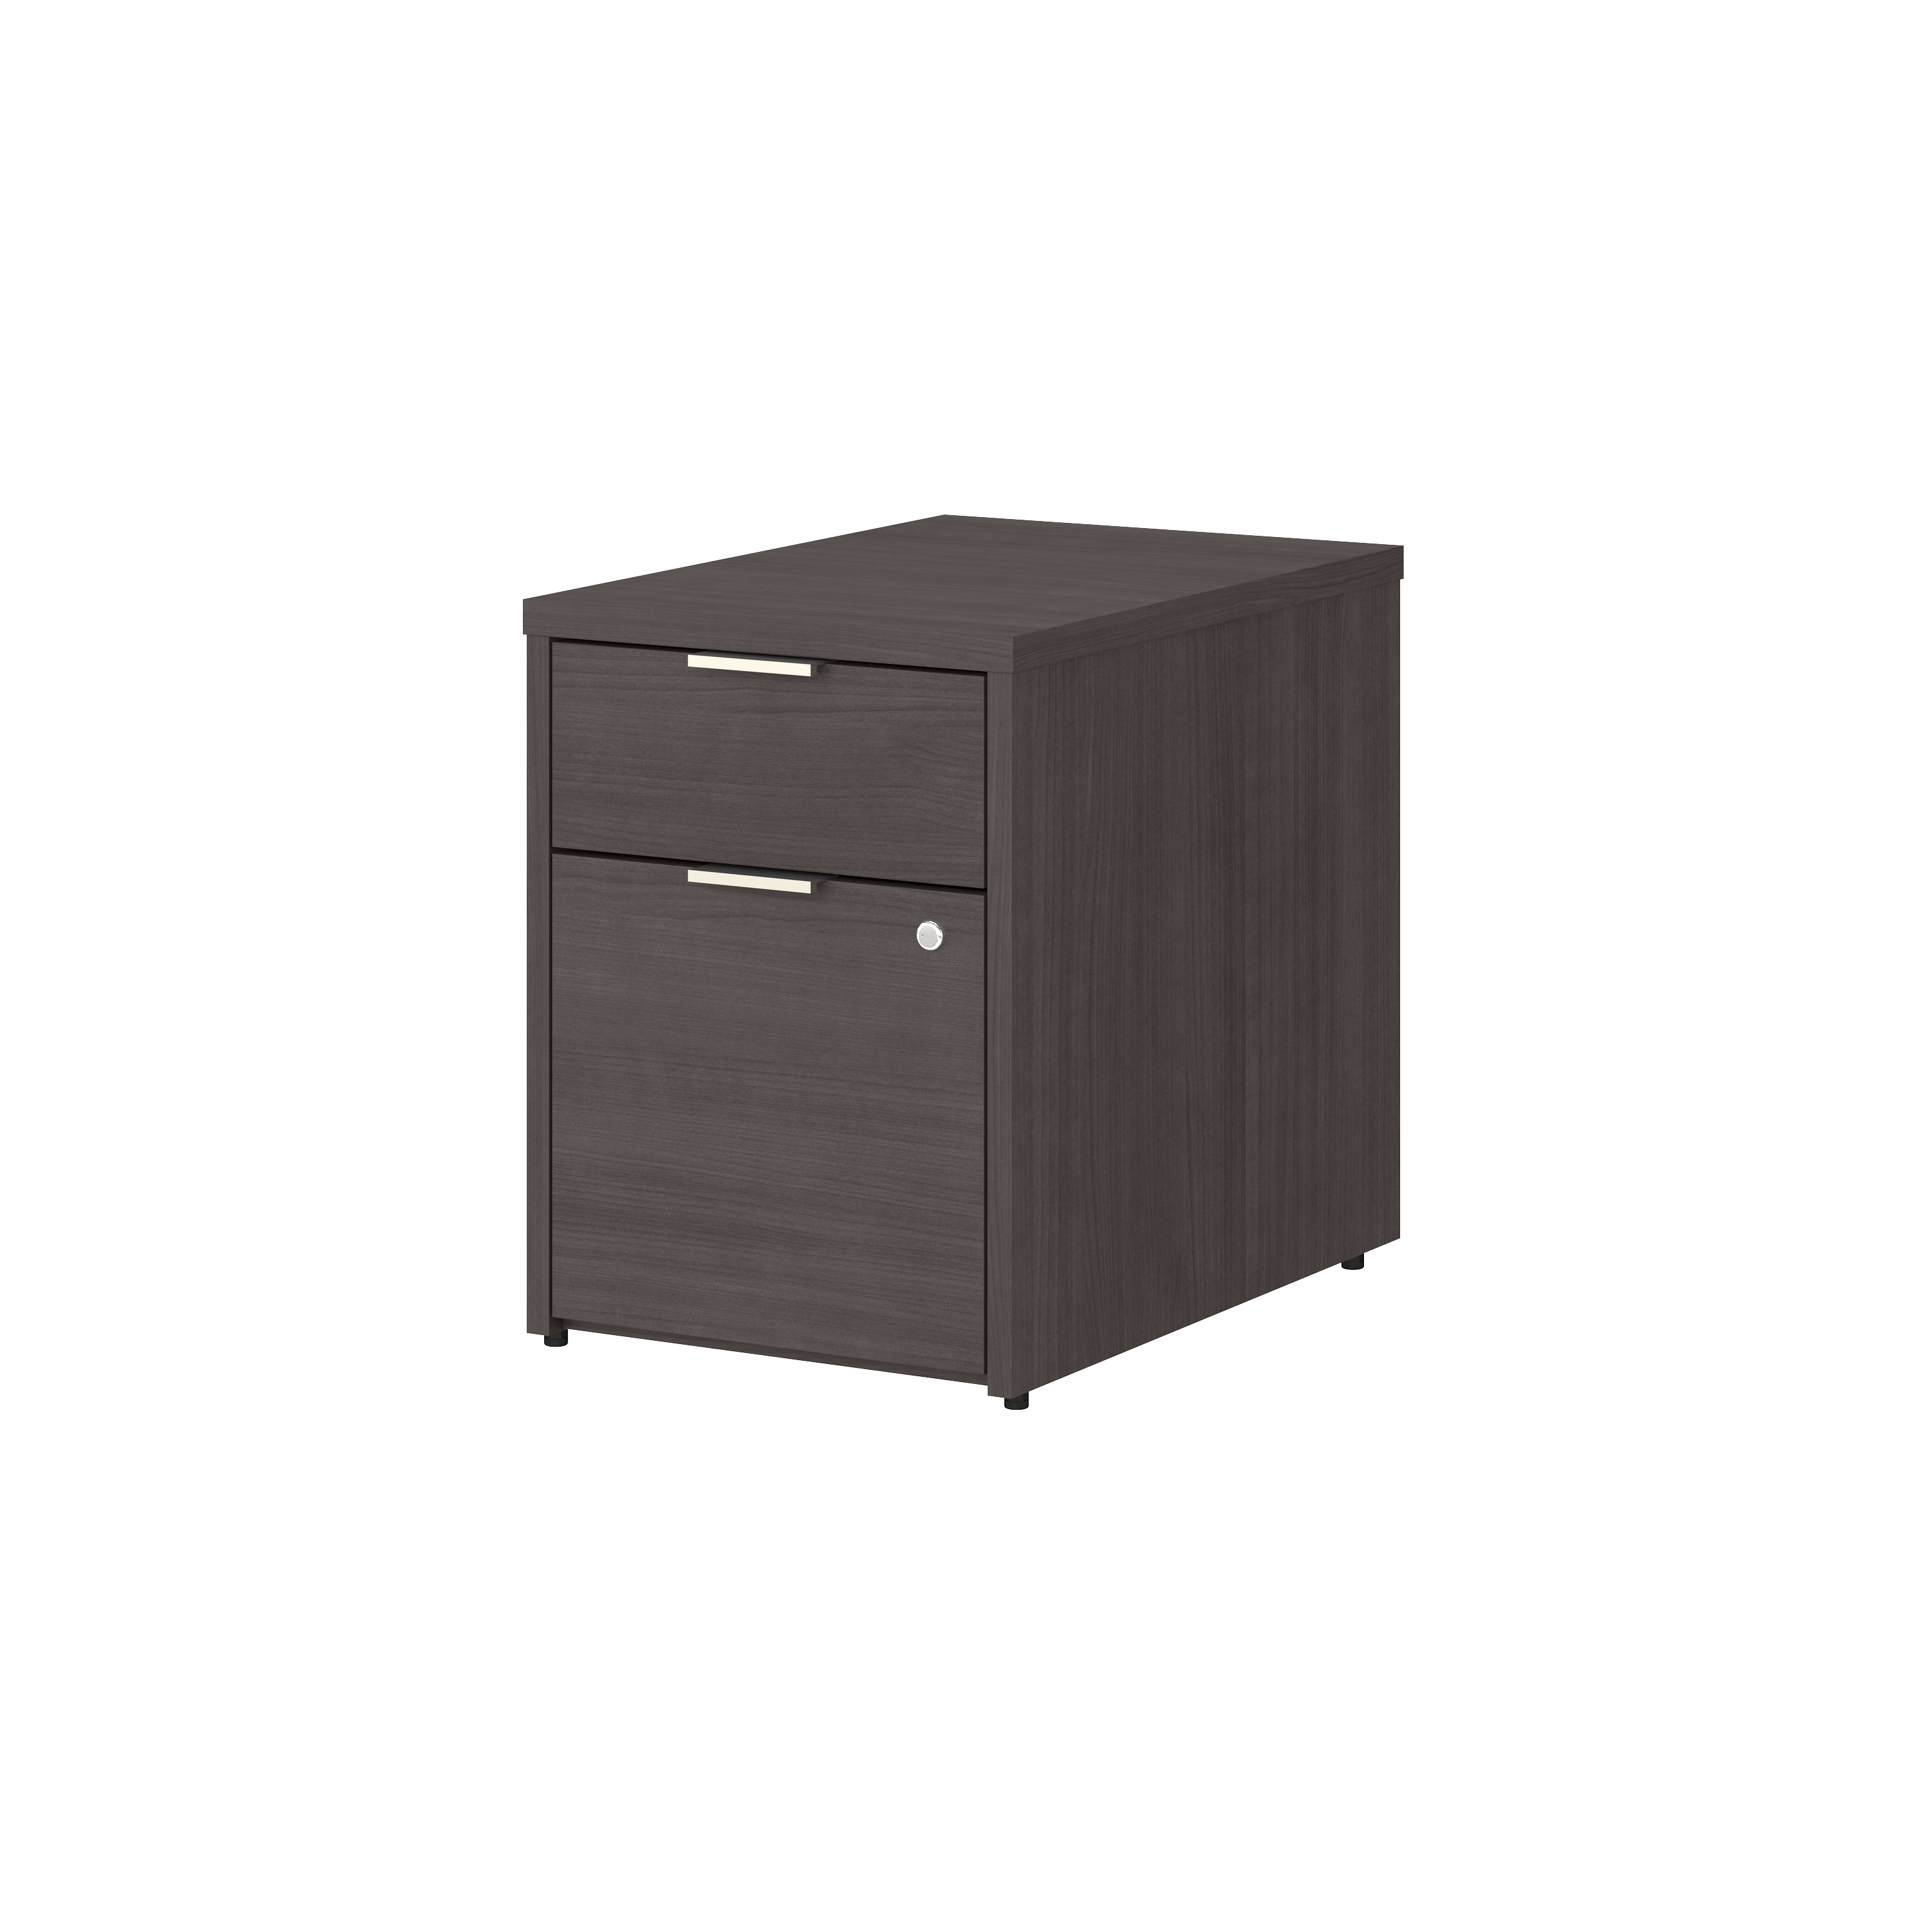 Shop Bush Business Furniture Jamestown 2 Drawer File Cabinet - Assembled 02 JTF116SGSU #color_storm gray